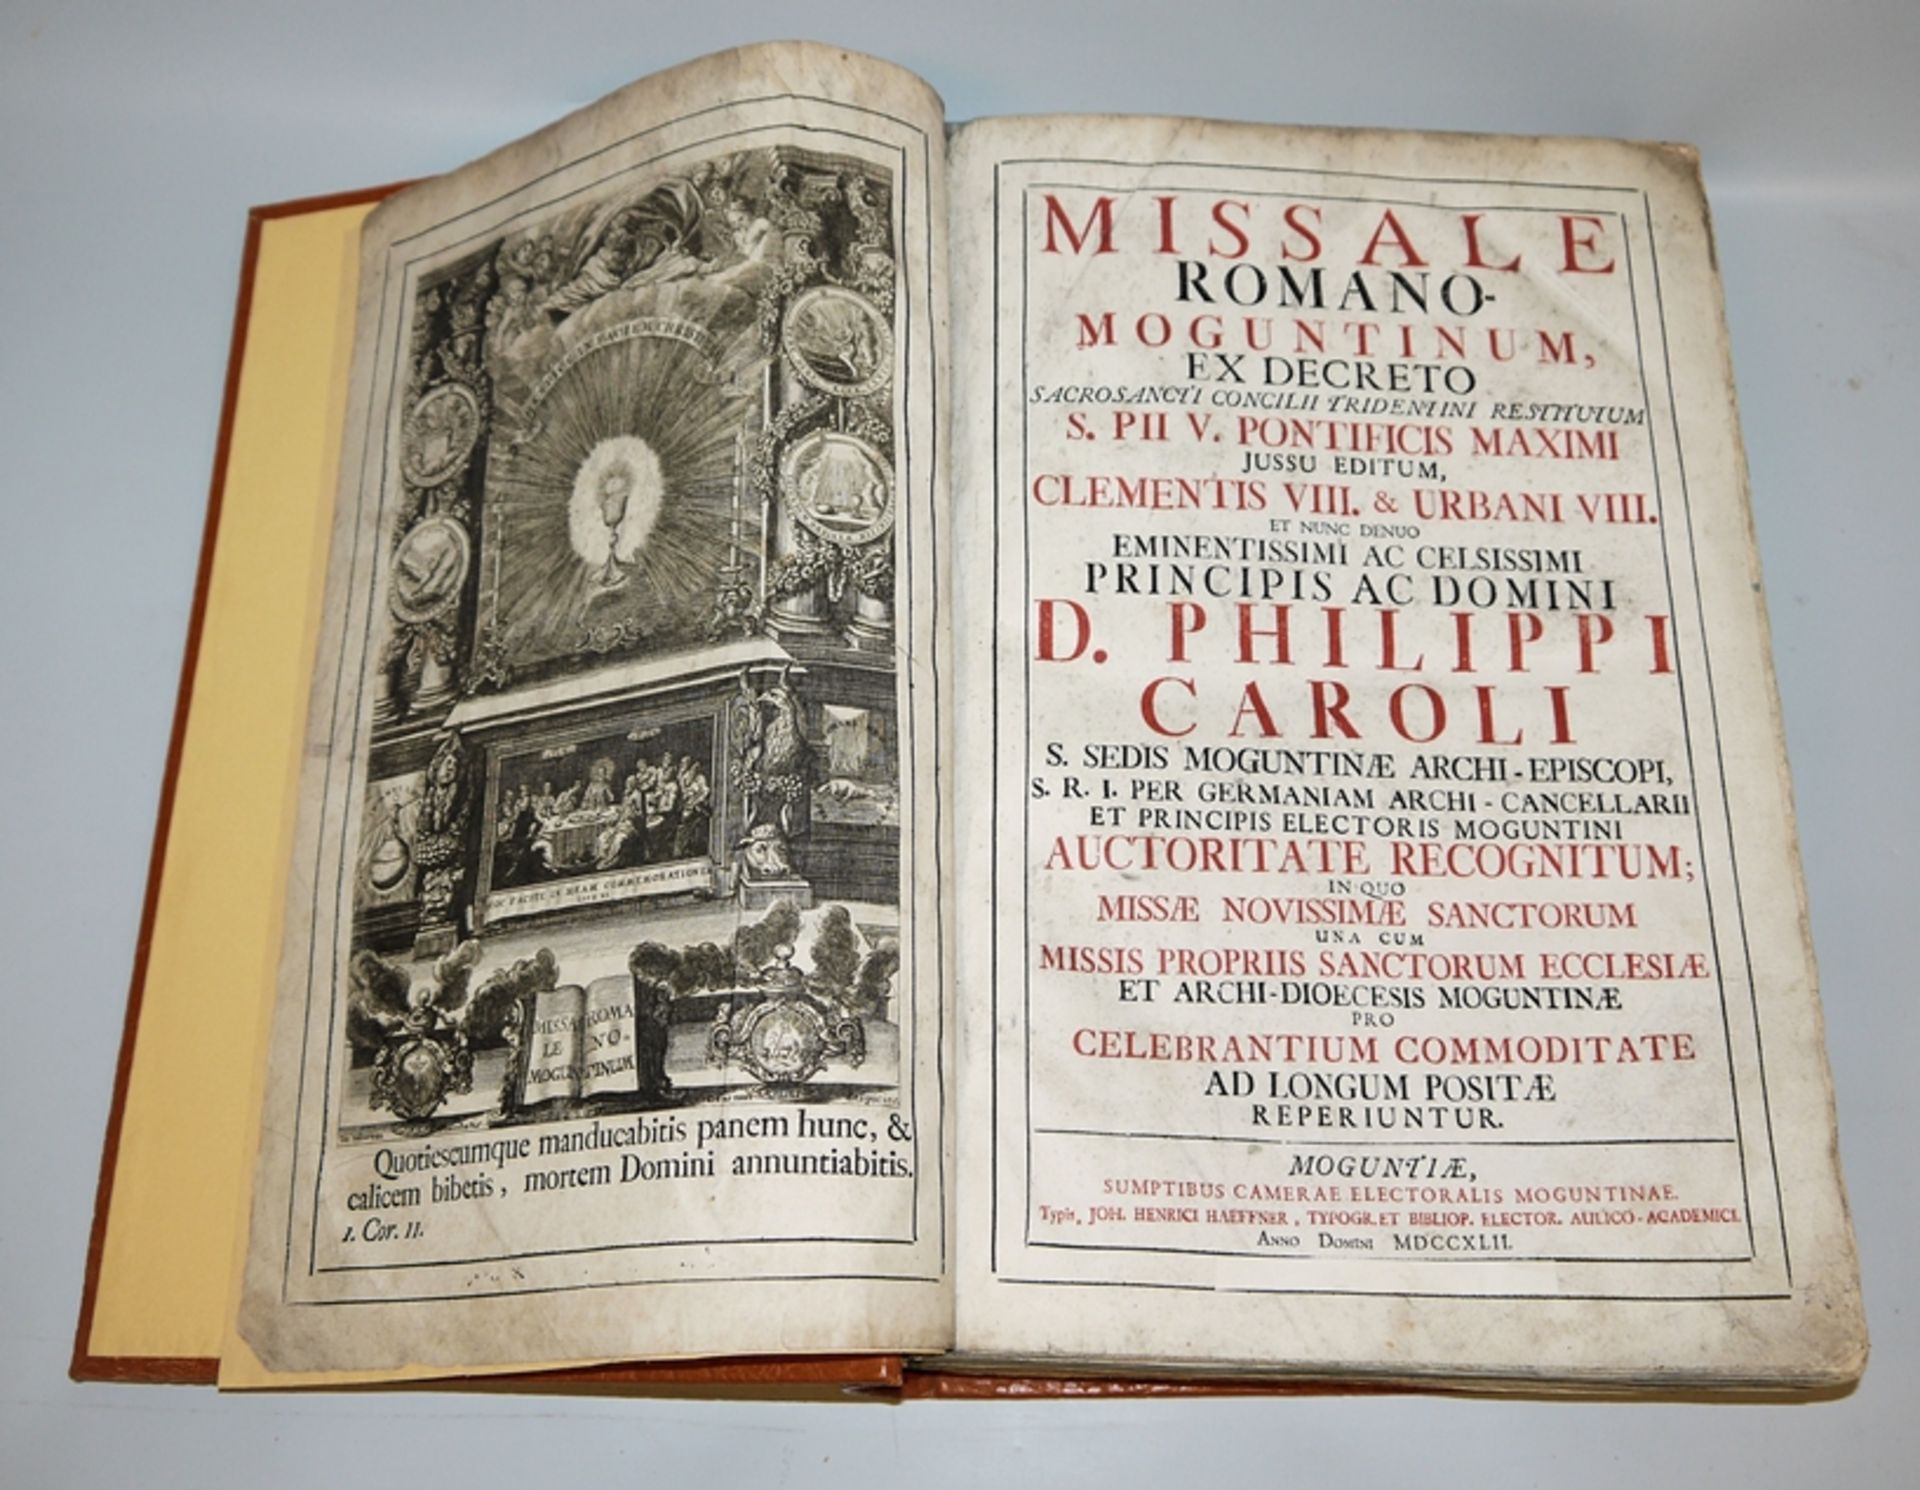 Missale Romano Moguntinum of 1742